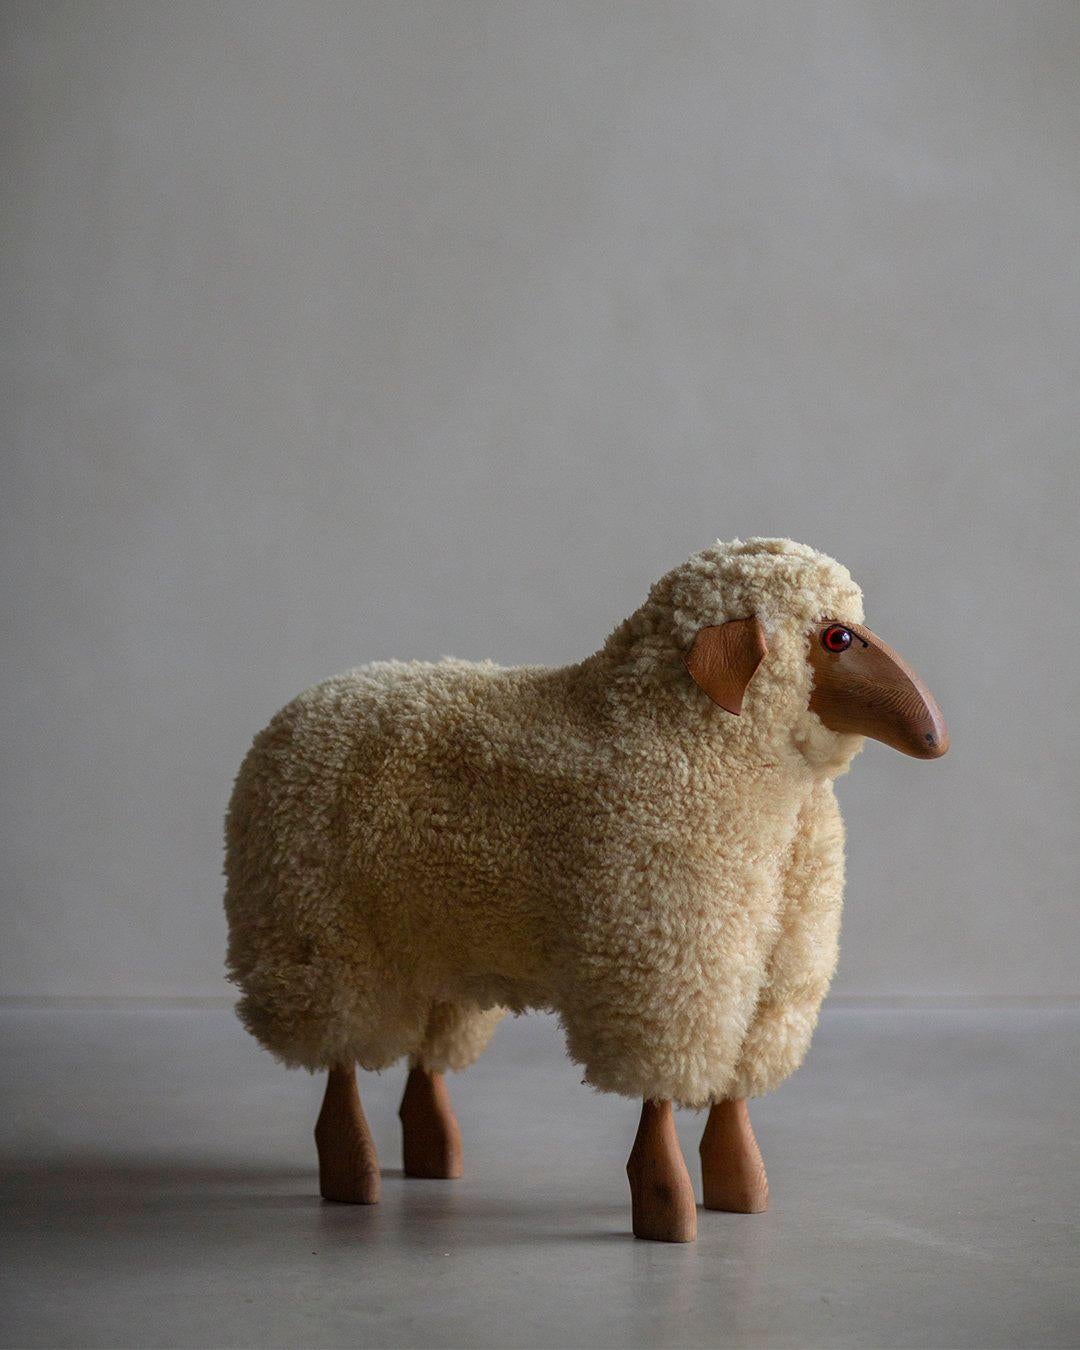 La Escultura de oveja de lana de Hanns-Peter Krafft, una edición temprana con mucho encanto vintage, se fabricó para la empresa alemana Meier. Hecha a mano, esta escultura muestra un carácter único y atención al detalle.

Construida principalmente